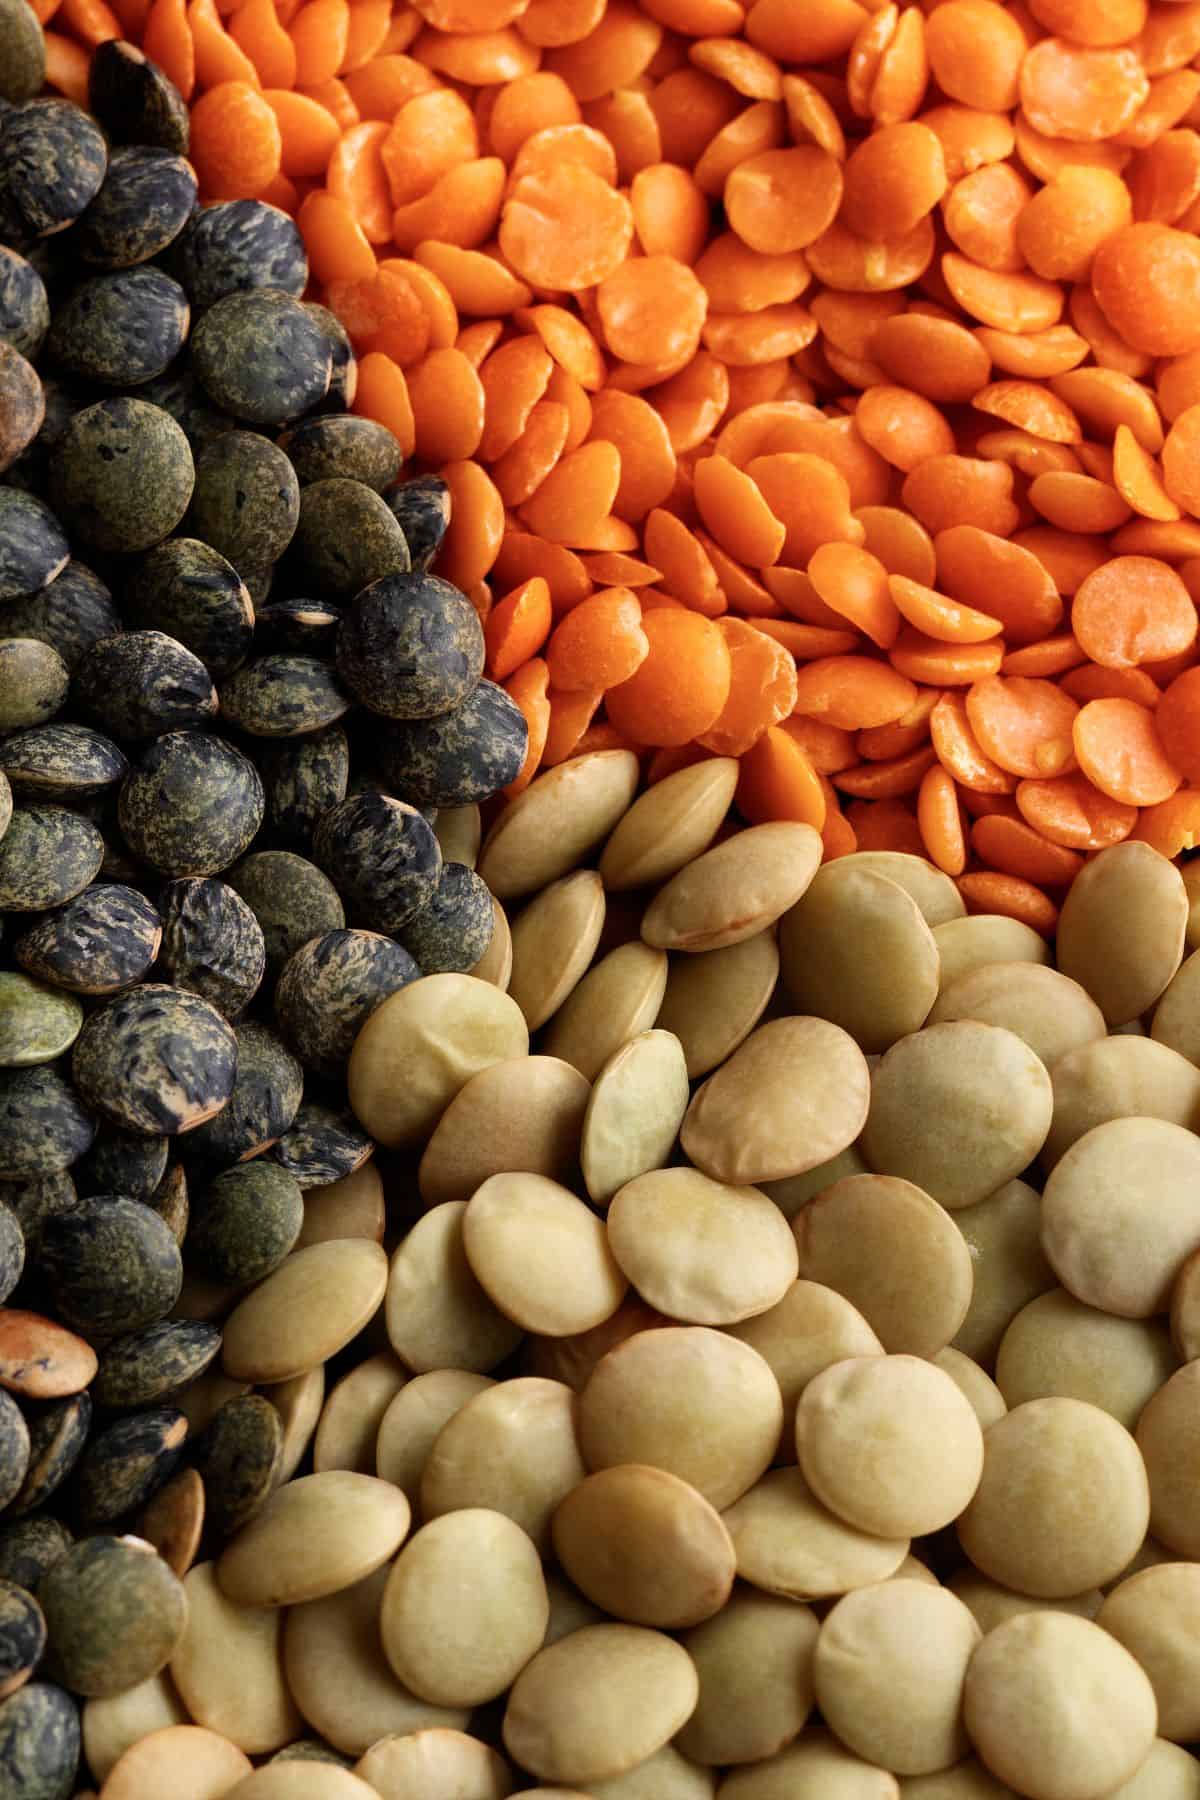 Closeup of red lentils, beluga lentils, and green lentils.